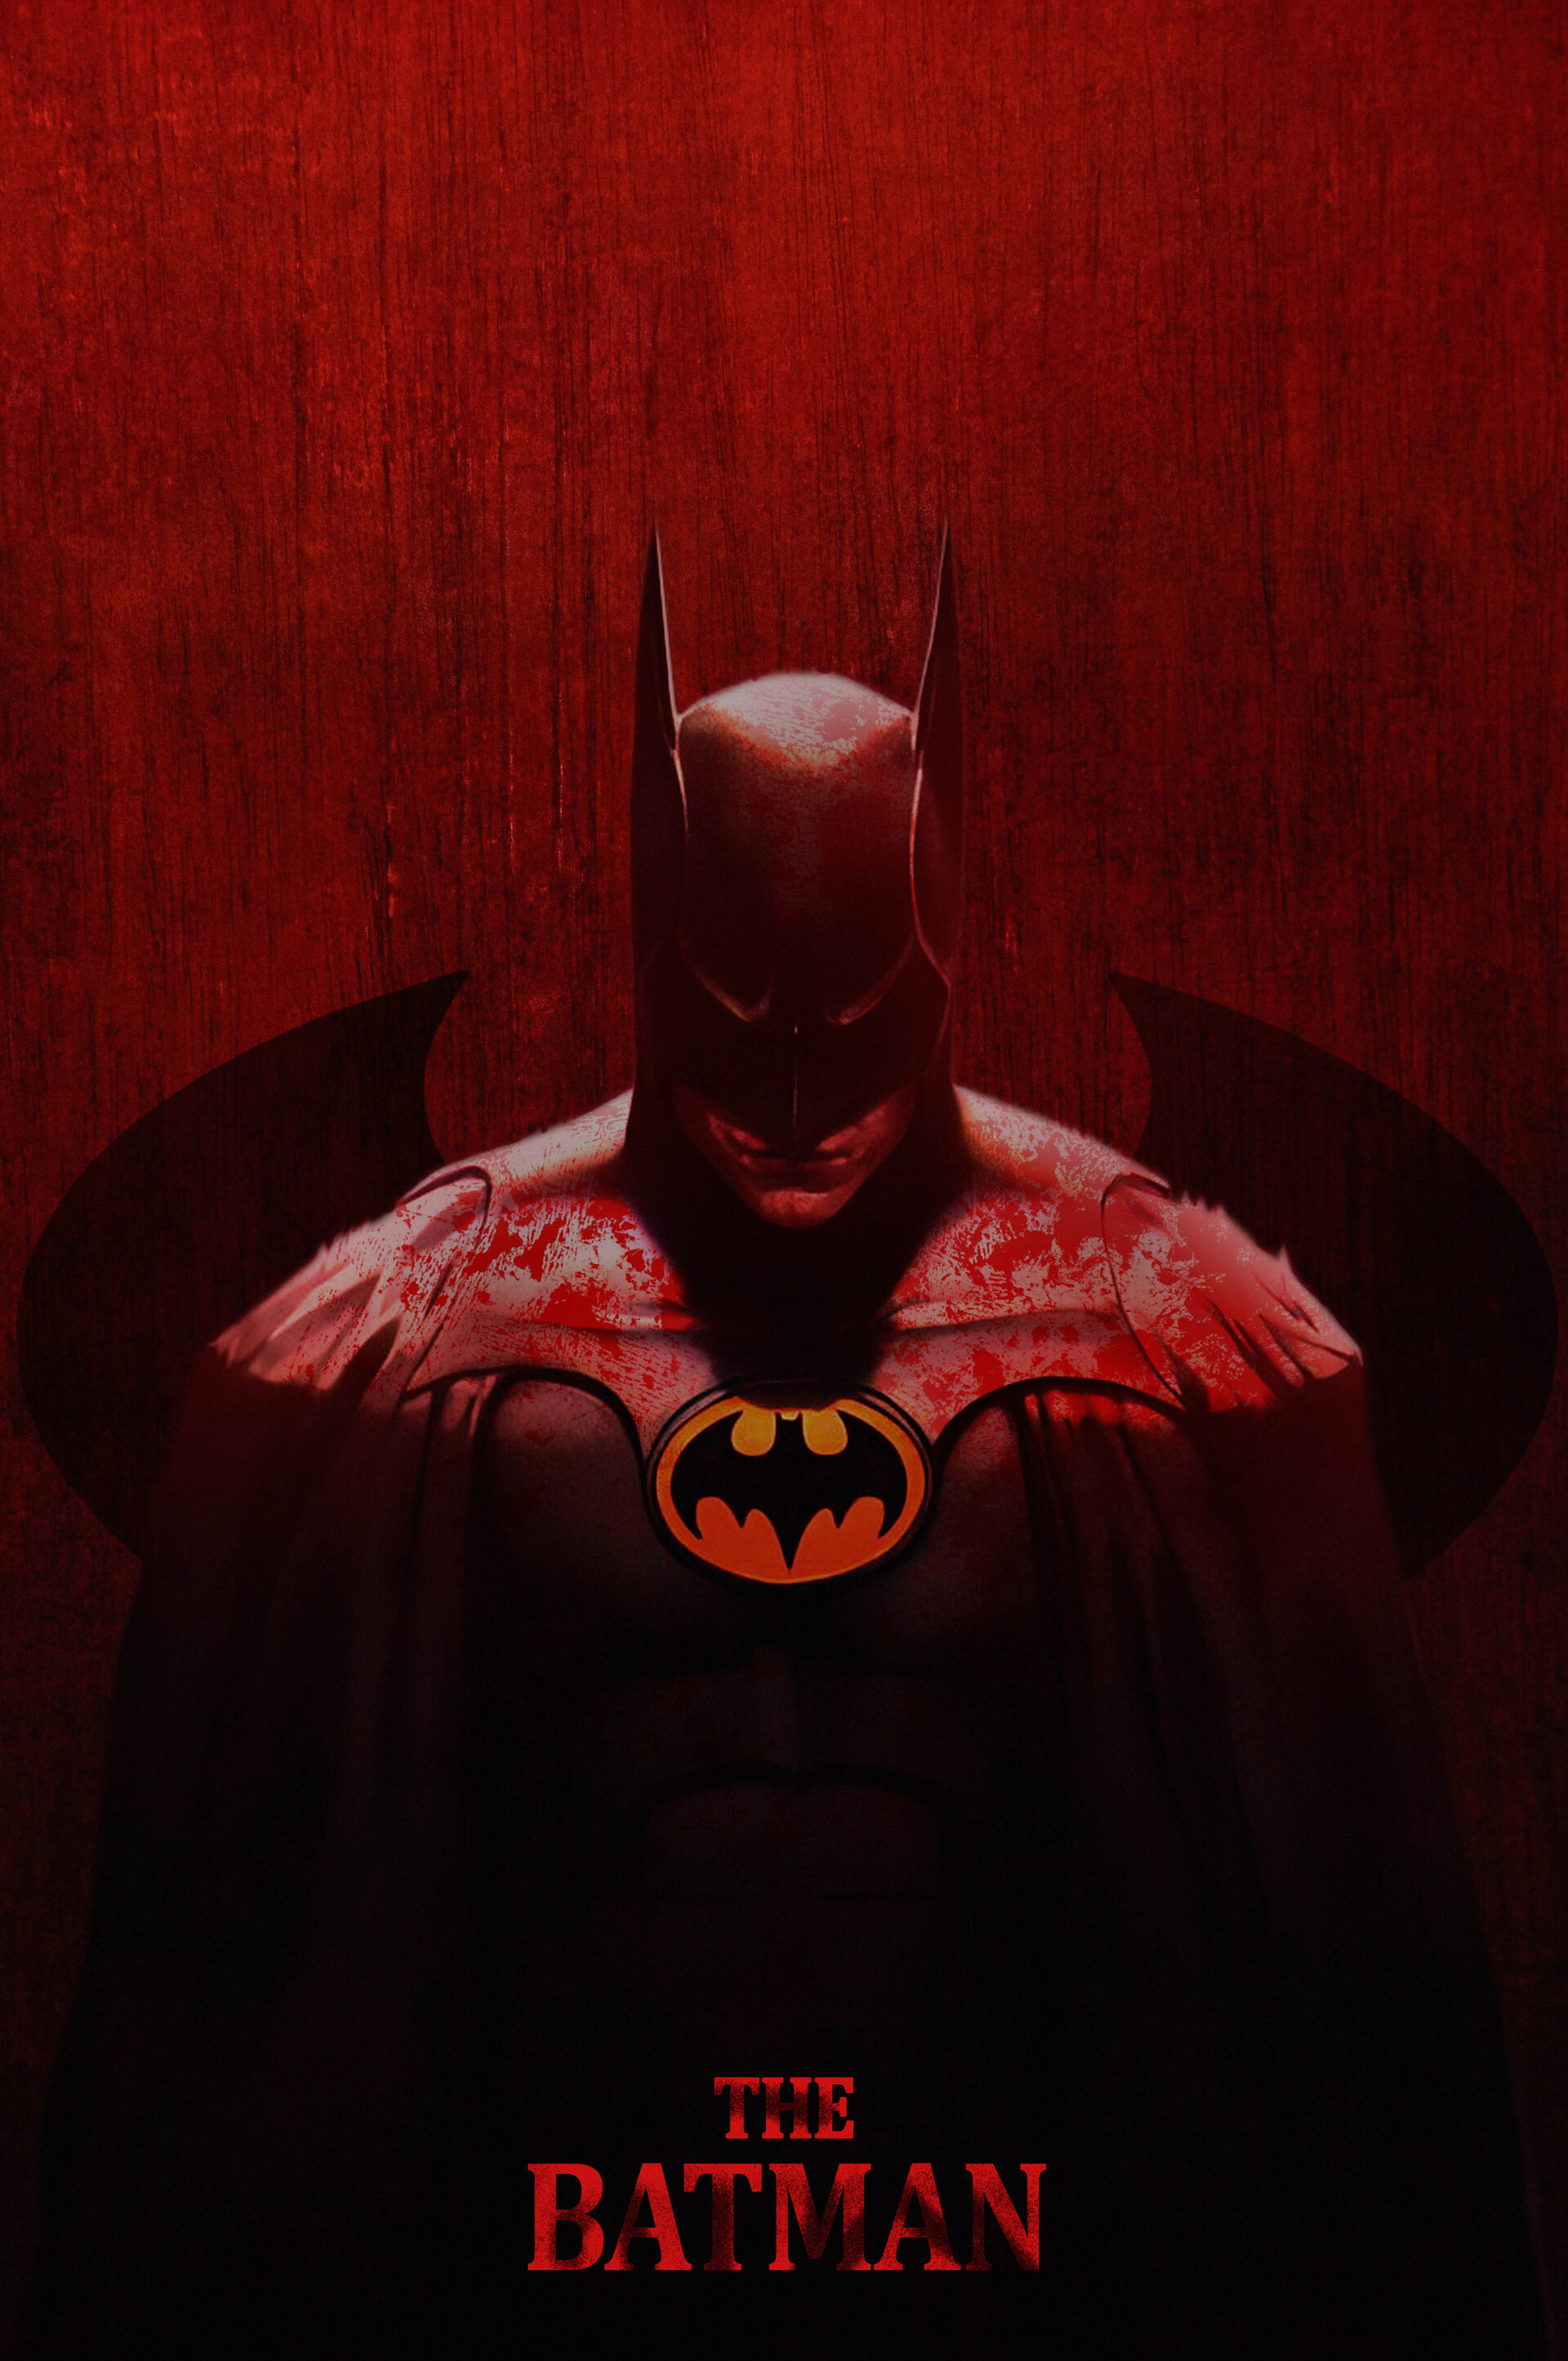 ArtStation - batman poster